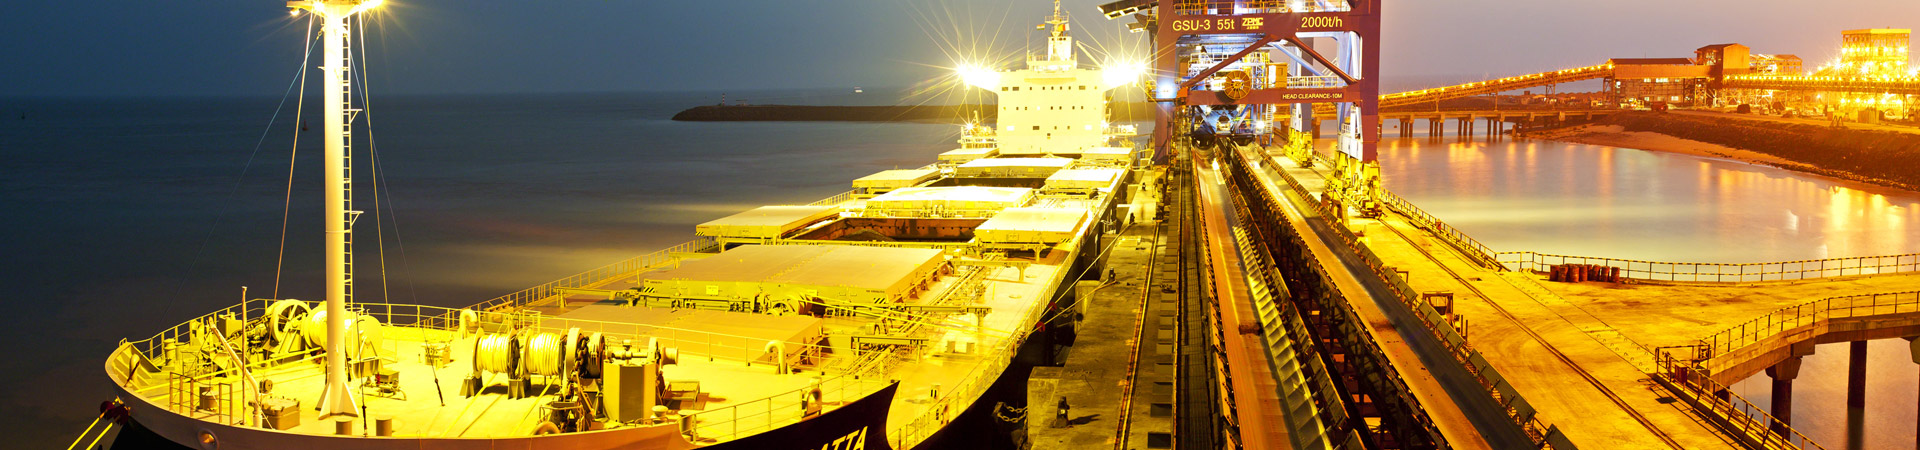 Design & Project Management - Port & Maritime